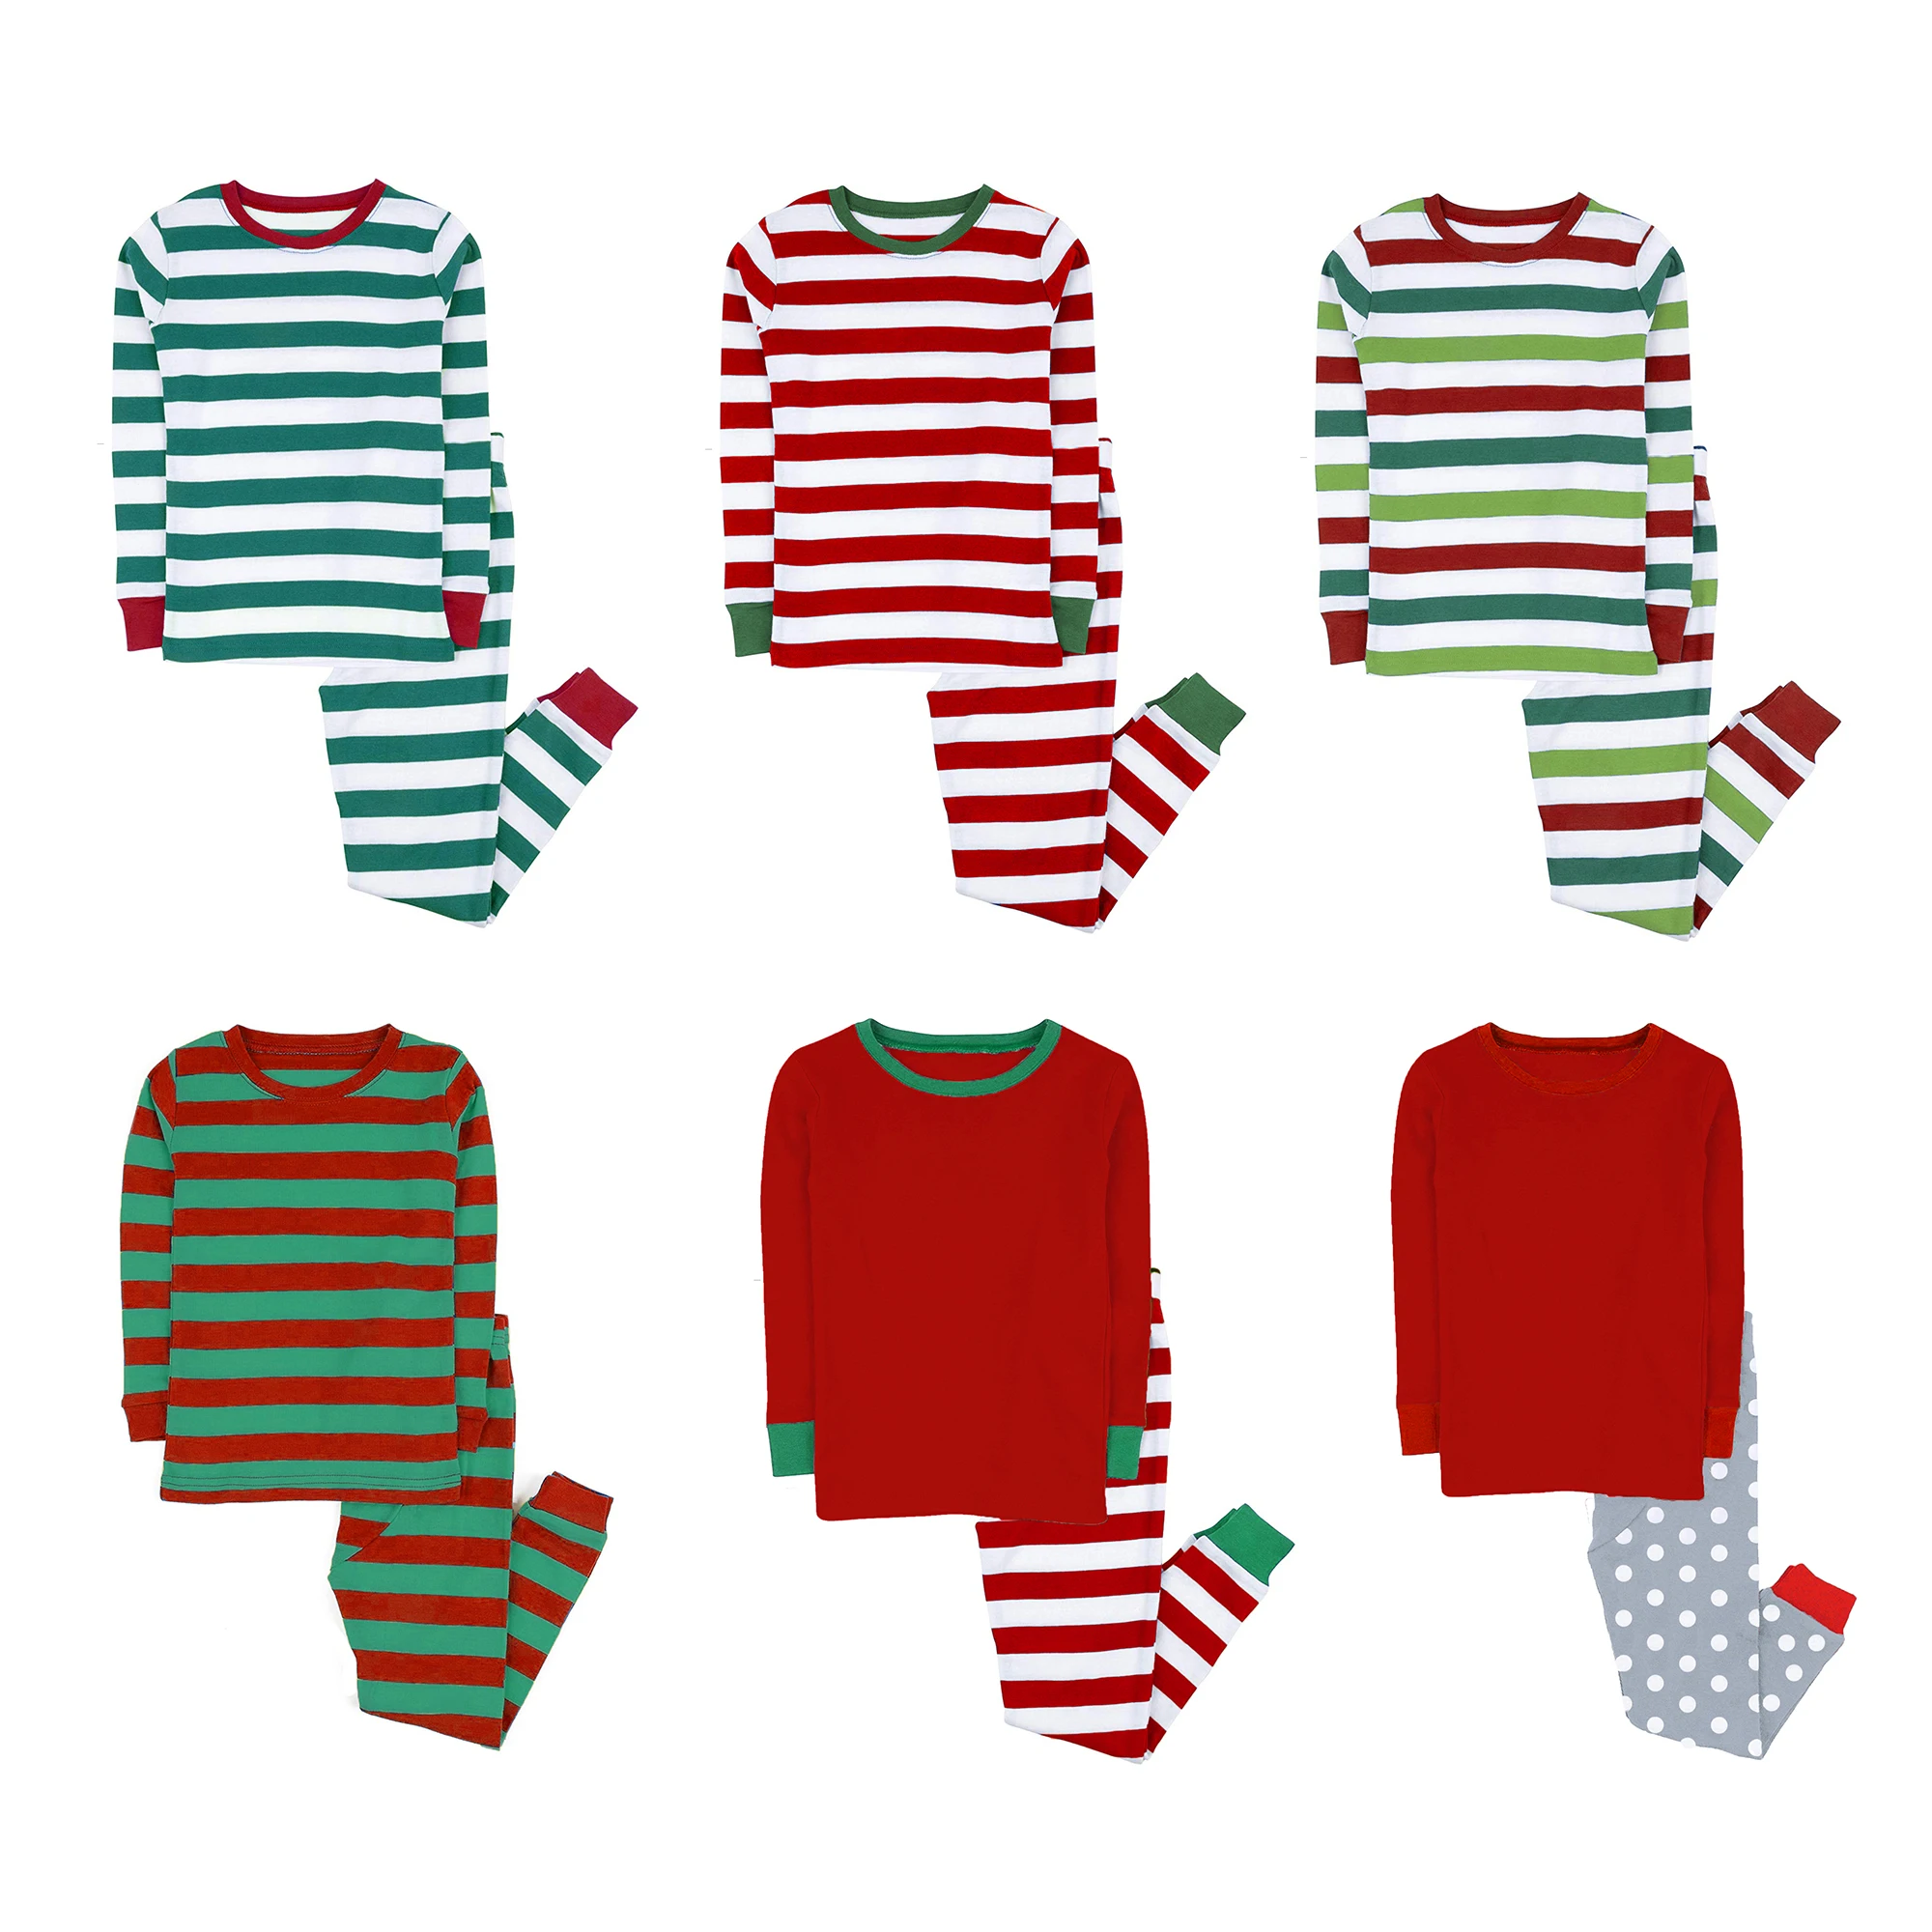 Vetements Pour Enfants Pyjama De Noel Pour Petite Fille 2 Pieces Buy Vetements Bebe Fille Pyjamas De Noel Vetements Enfants Product On Alibaba Com